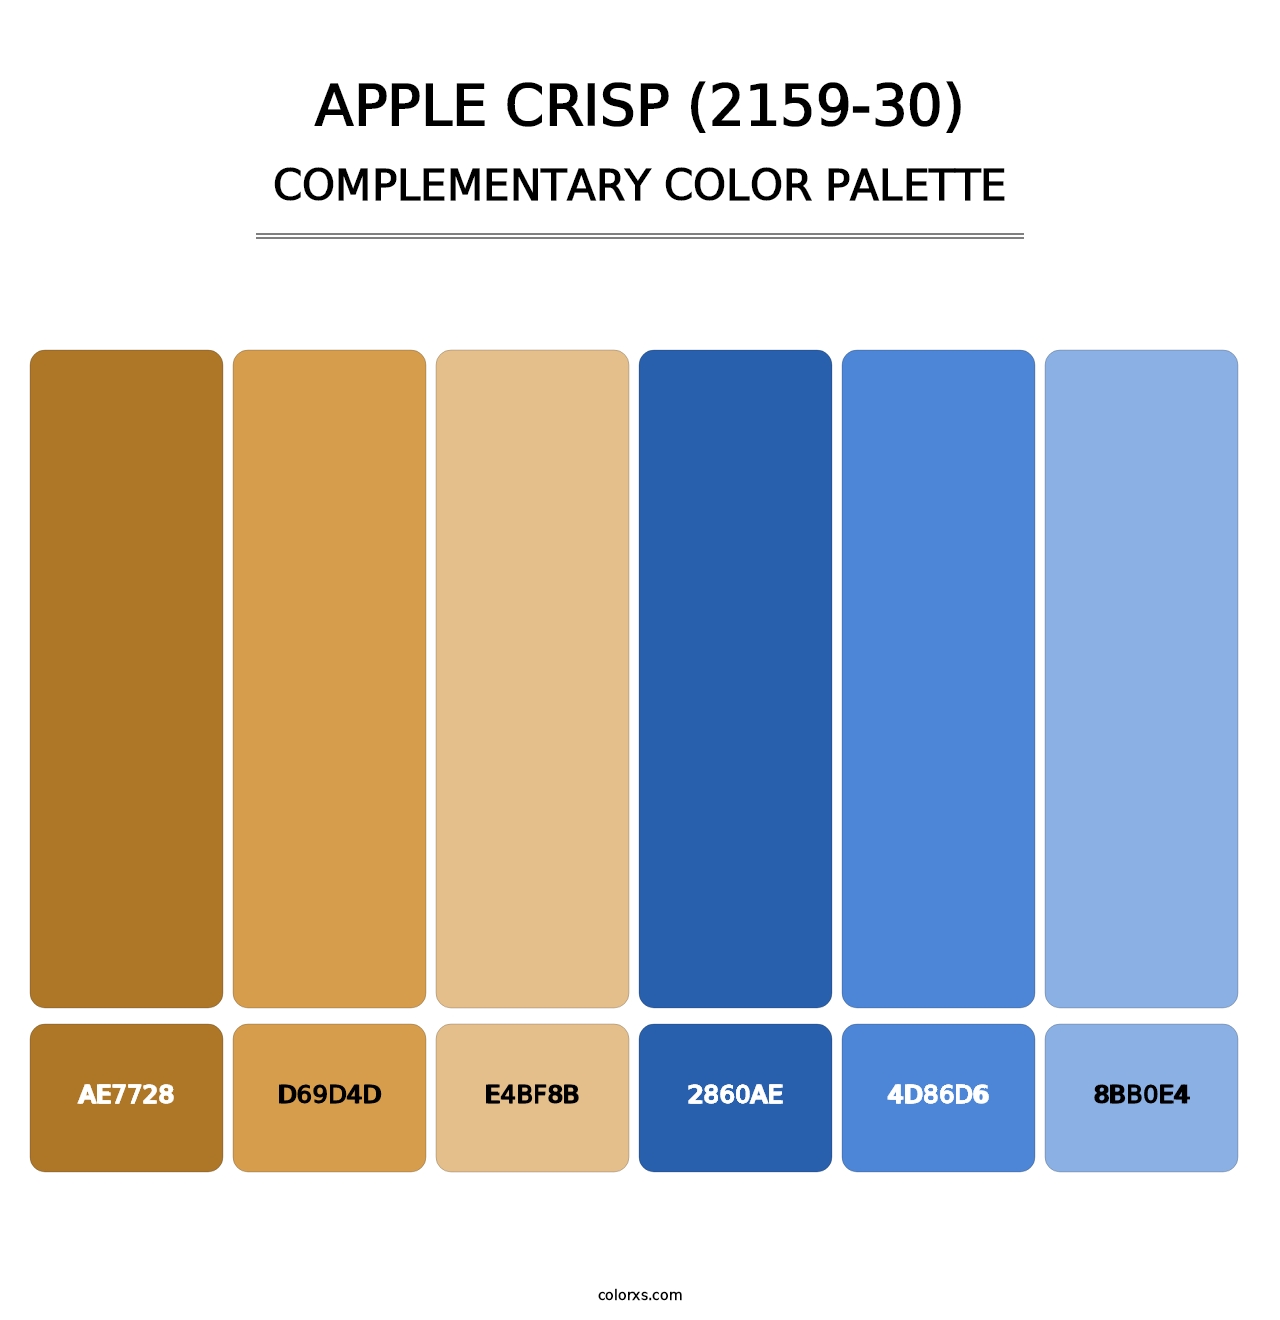 Apple Crisp (2159-30) - Complementary Color Palette